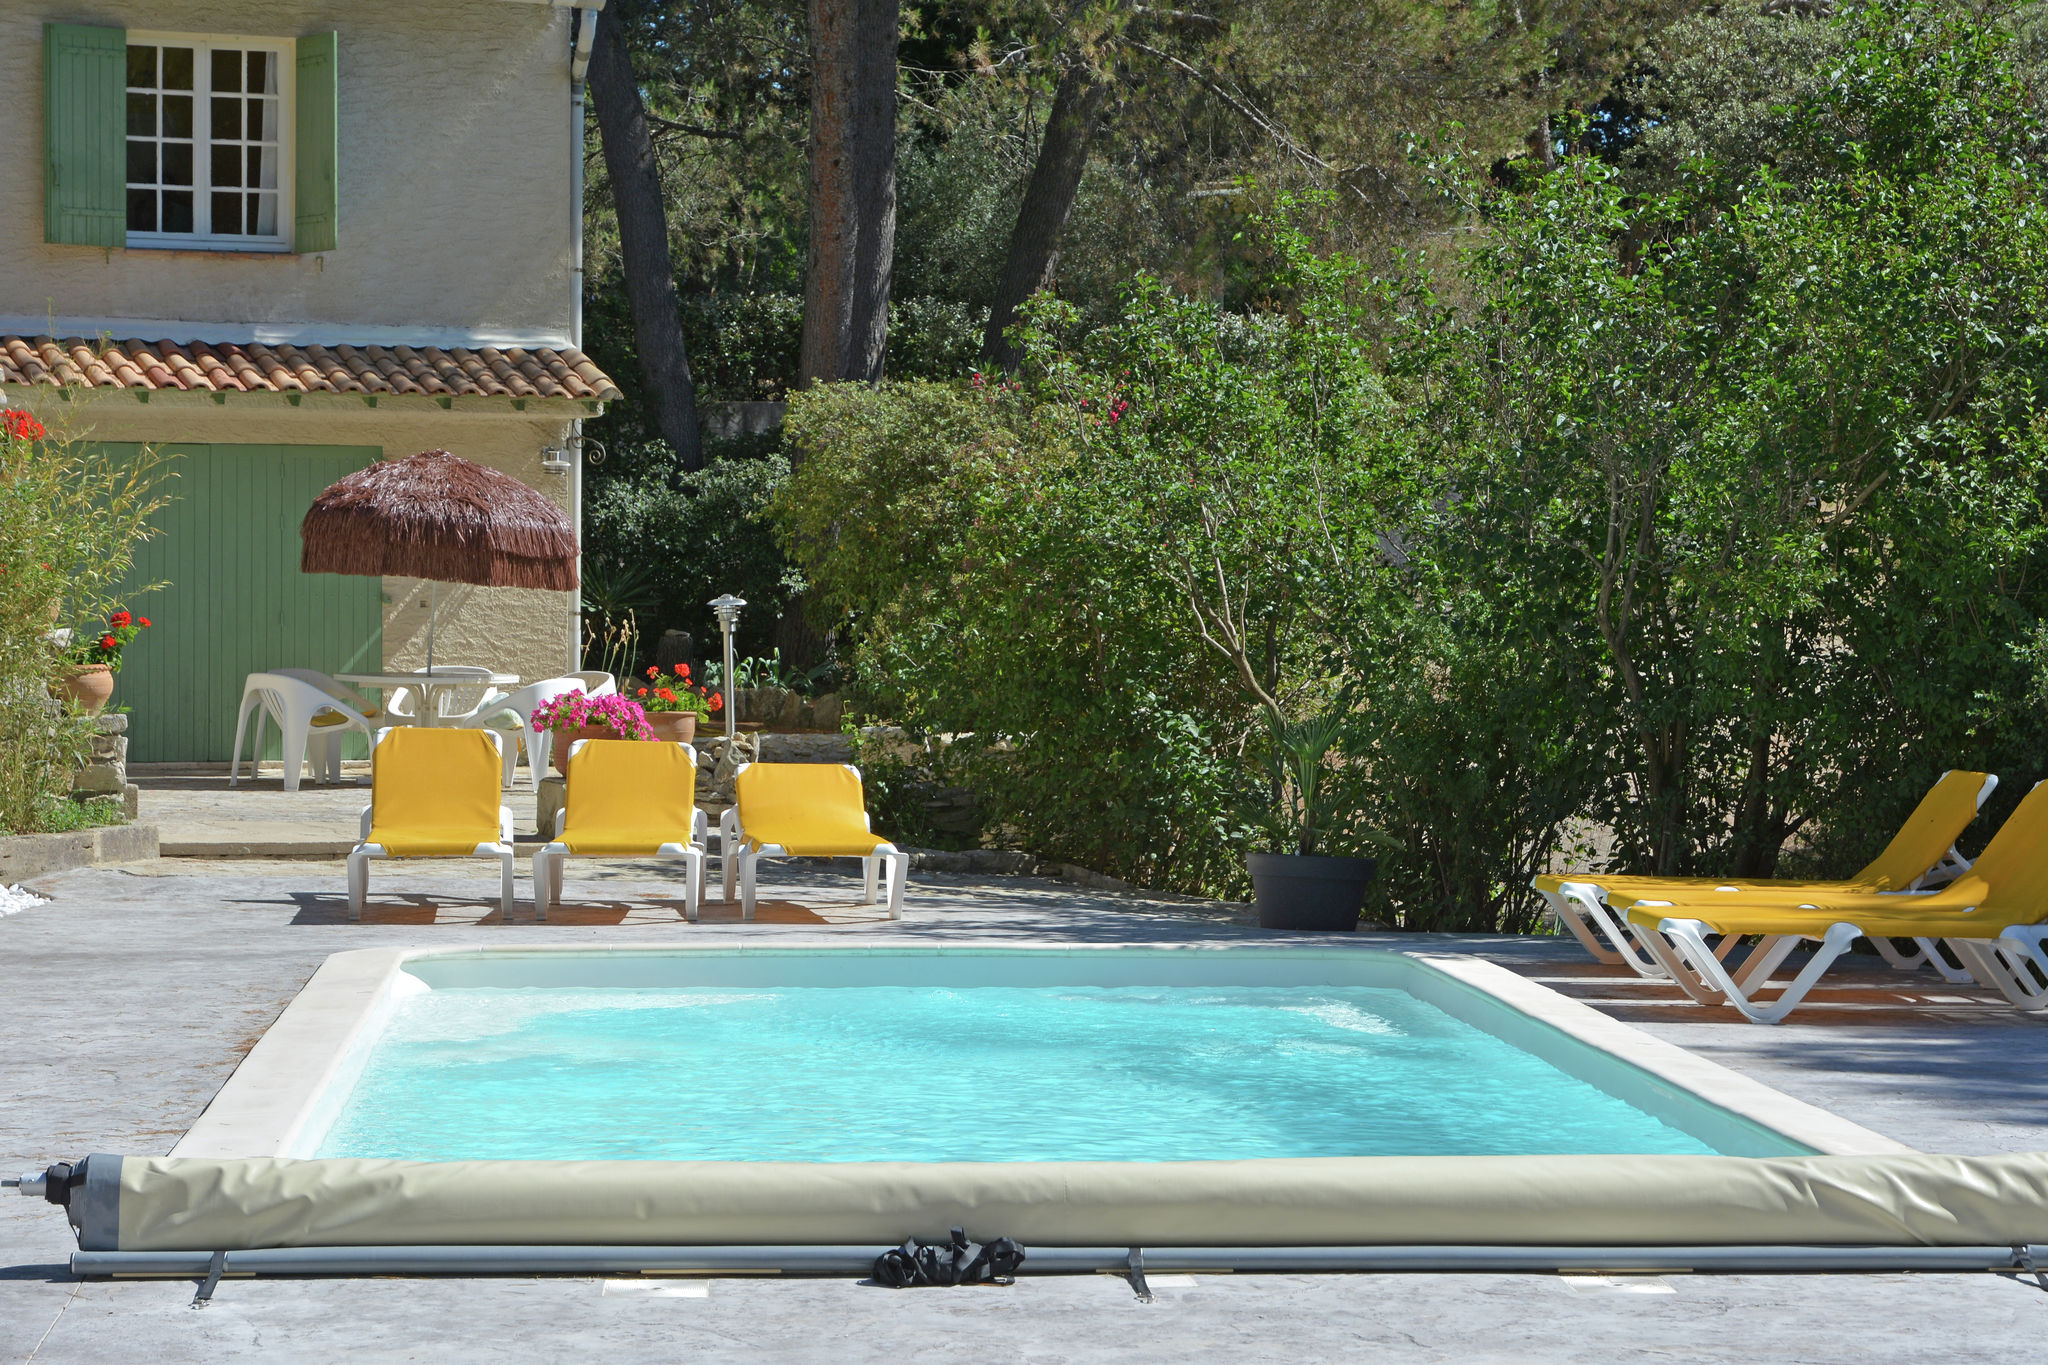 Paisible villa à Beaucaire au sud de la France, avec piscine